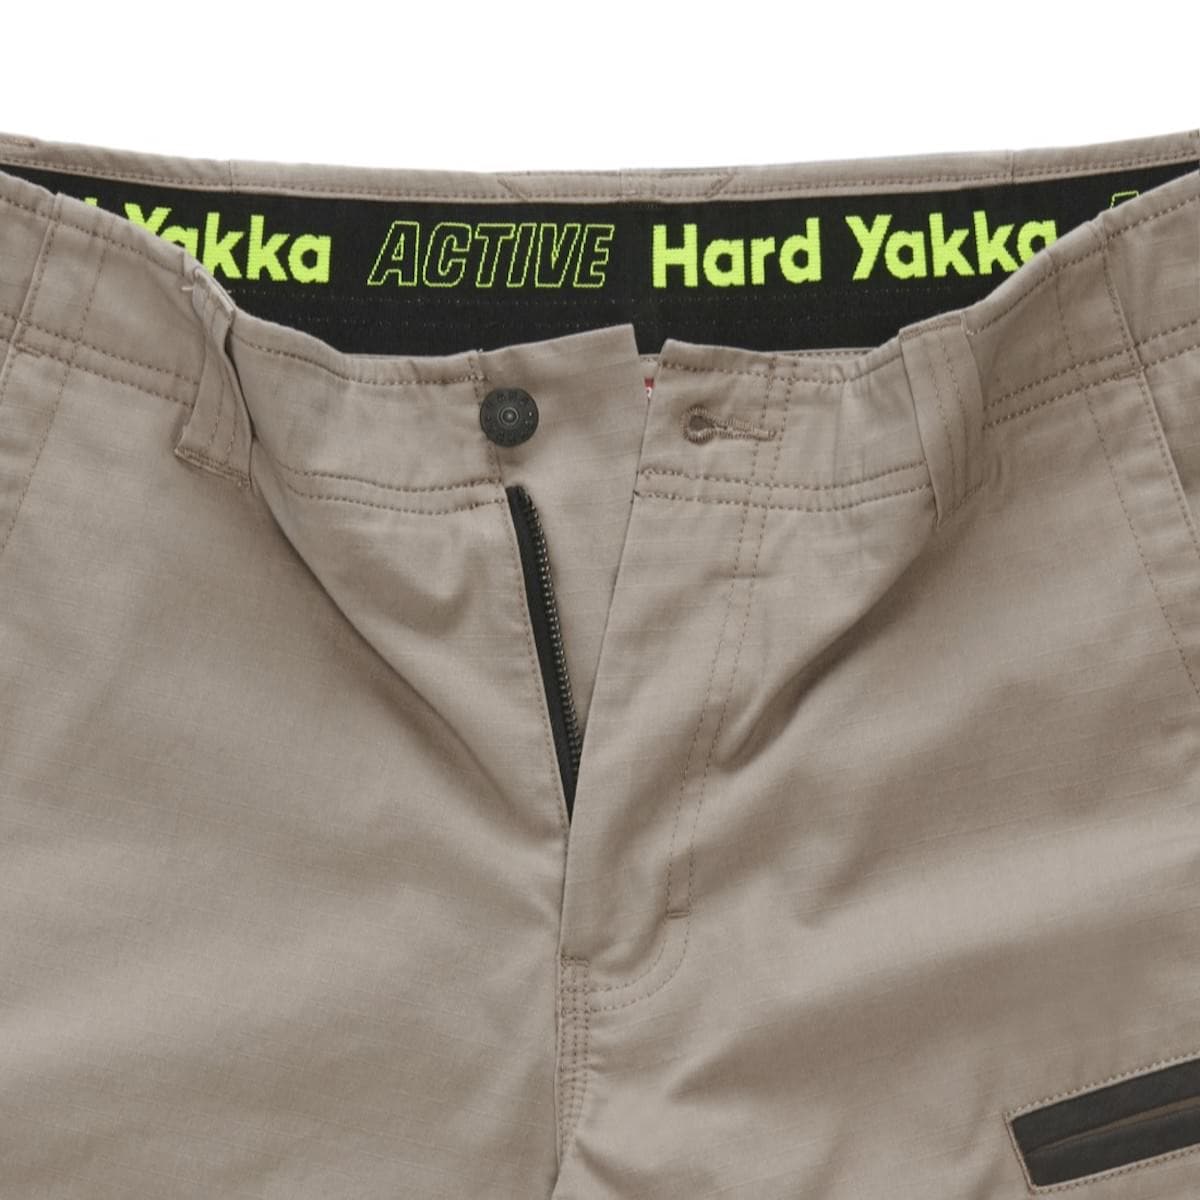 Hard Yakka Raptor Active Mid-Short Y05160